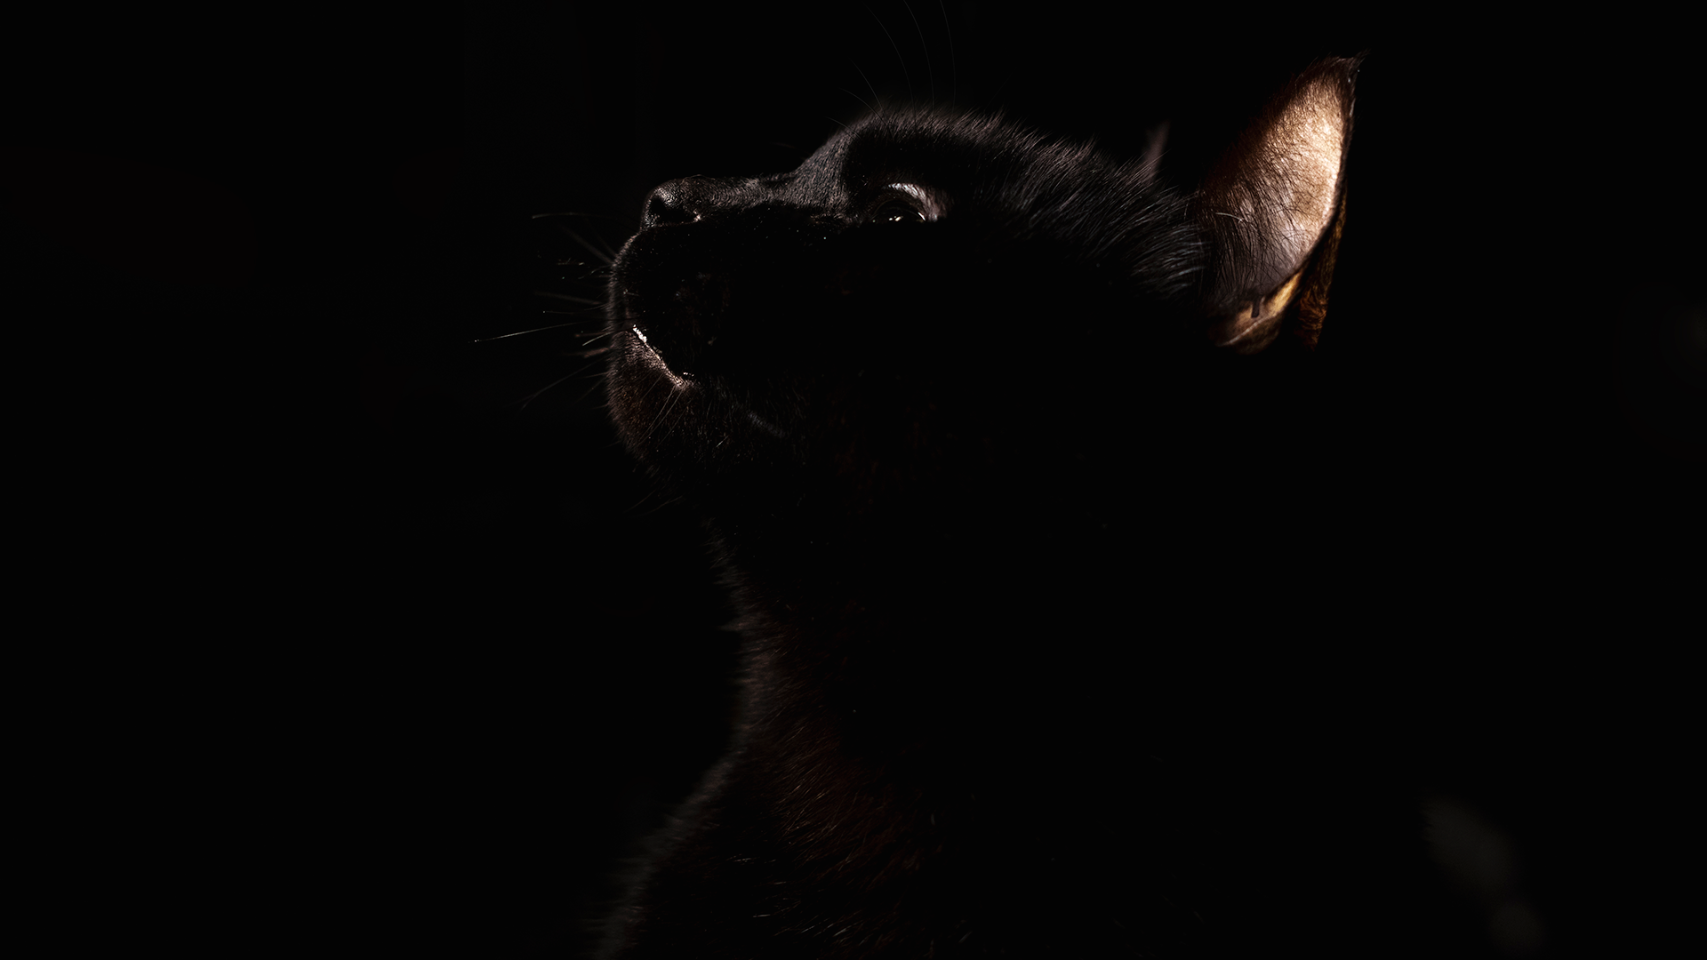 妄 猫猫凝视我好像还没在这边发过sherlock的这组照片 论黑猫猫的镜头感有多好 Moew